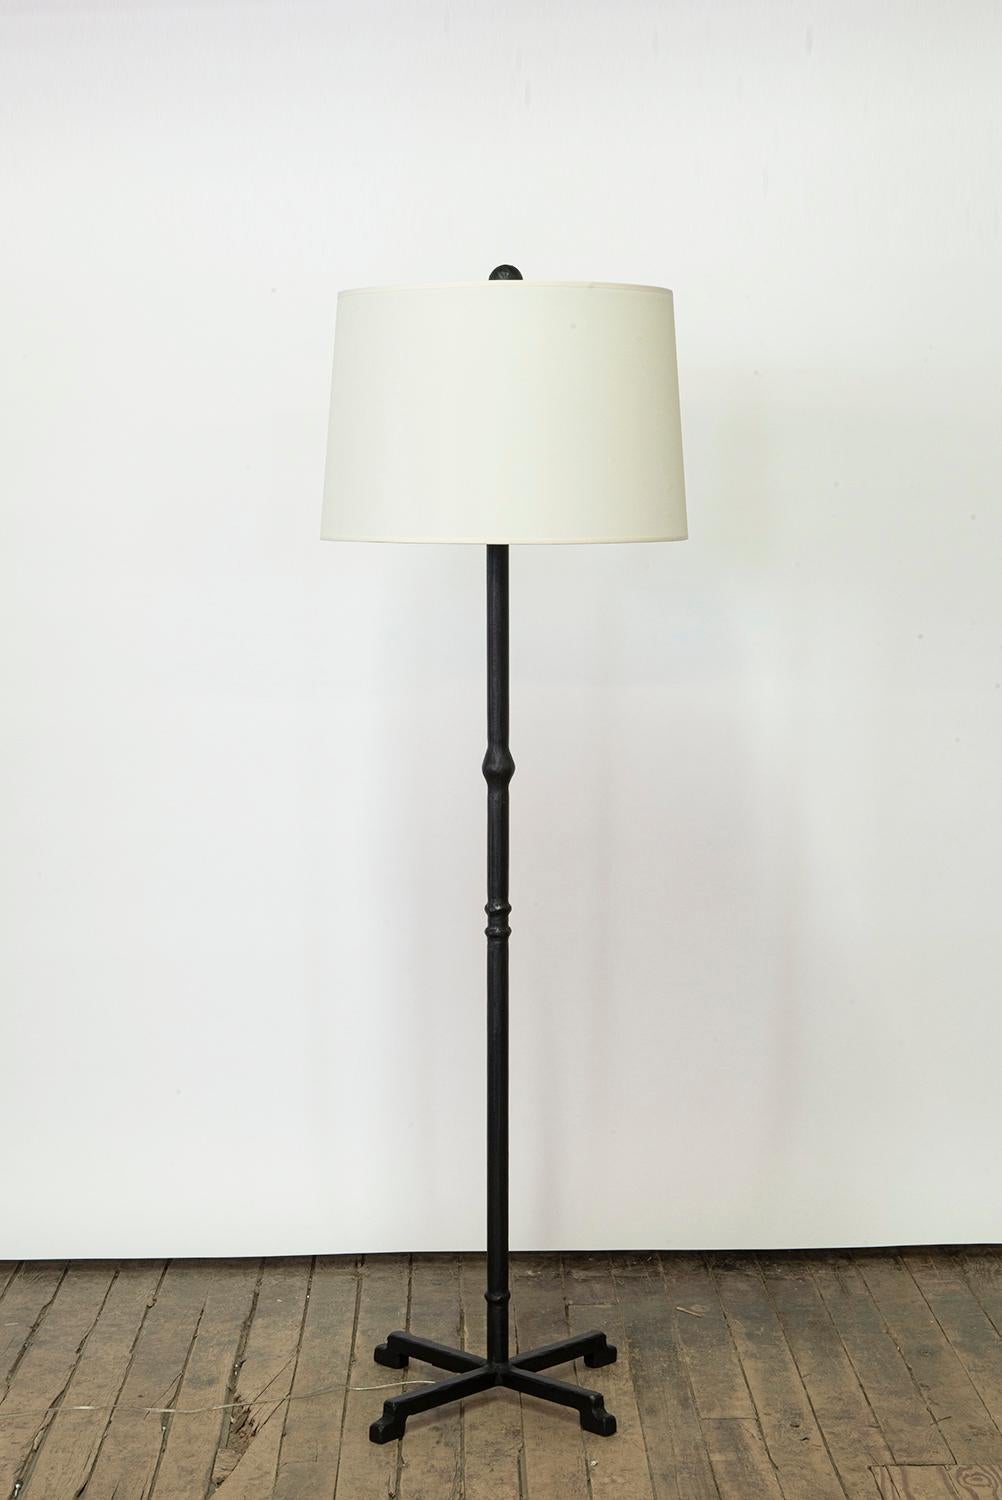 Lampe n° 5 
J.M. Szymanski
D. 2022

Ce lampadaire spécial est doté d'un abat-jour en lin et d'une base en acier sculpté. Une version unique d'un look classique, cette lampe simple présente un abat-jour en lin personnalisé et d'élégants